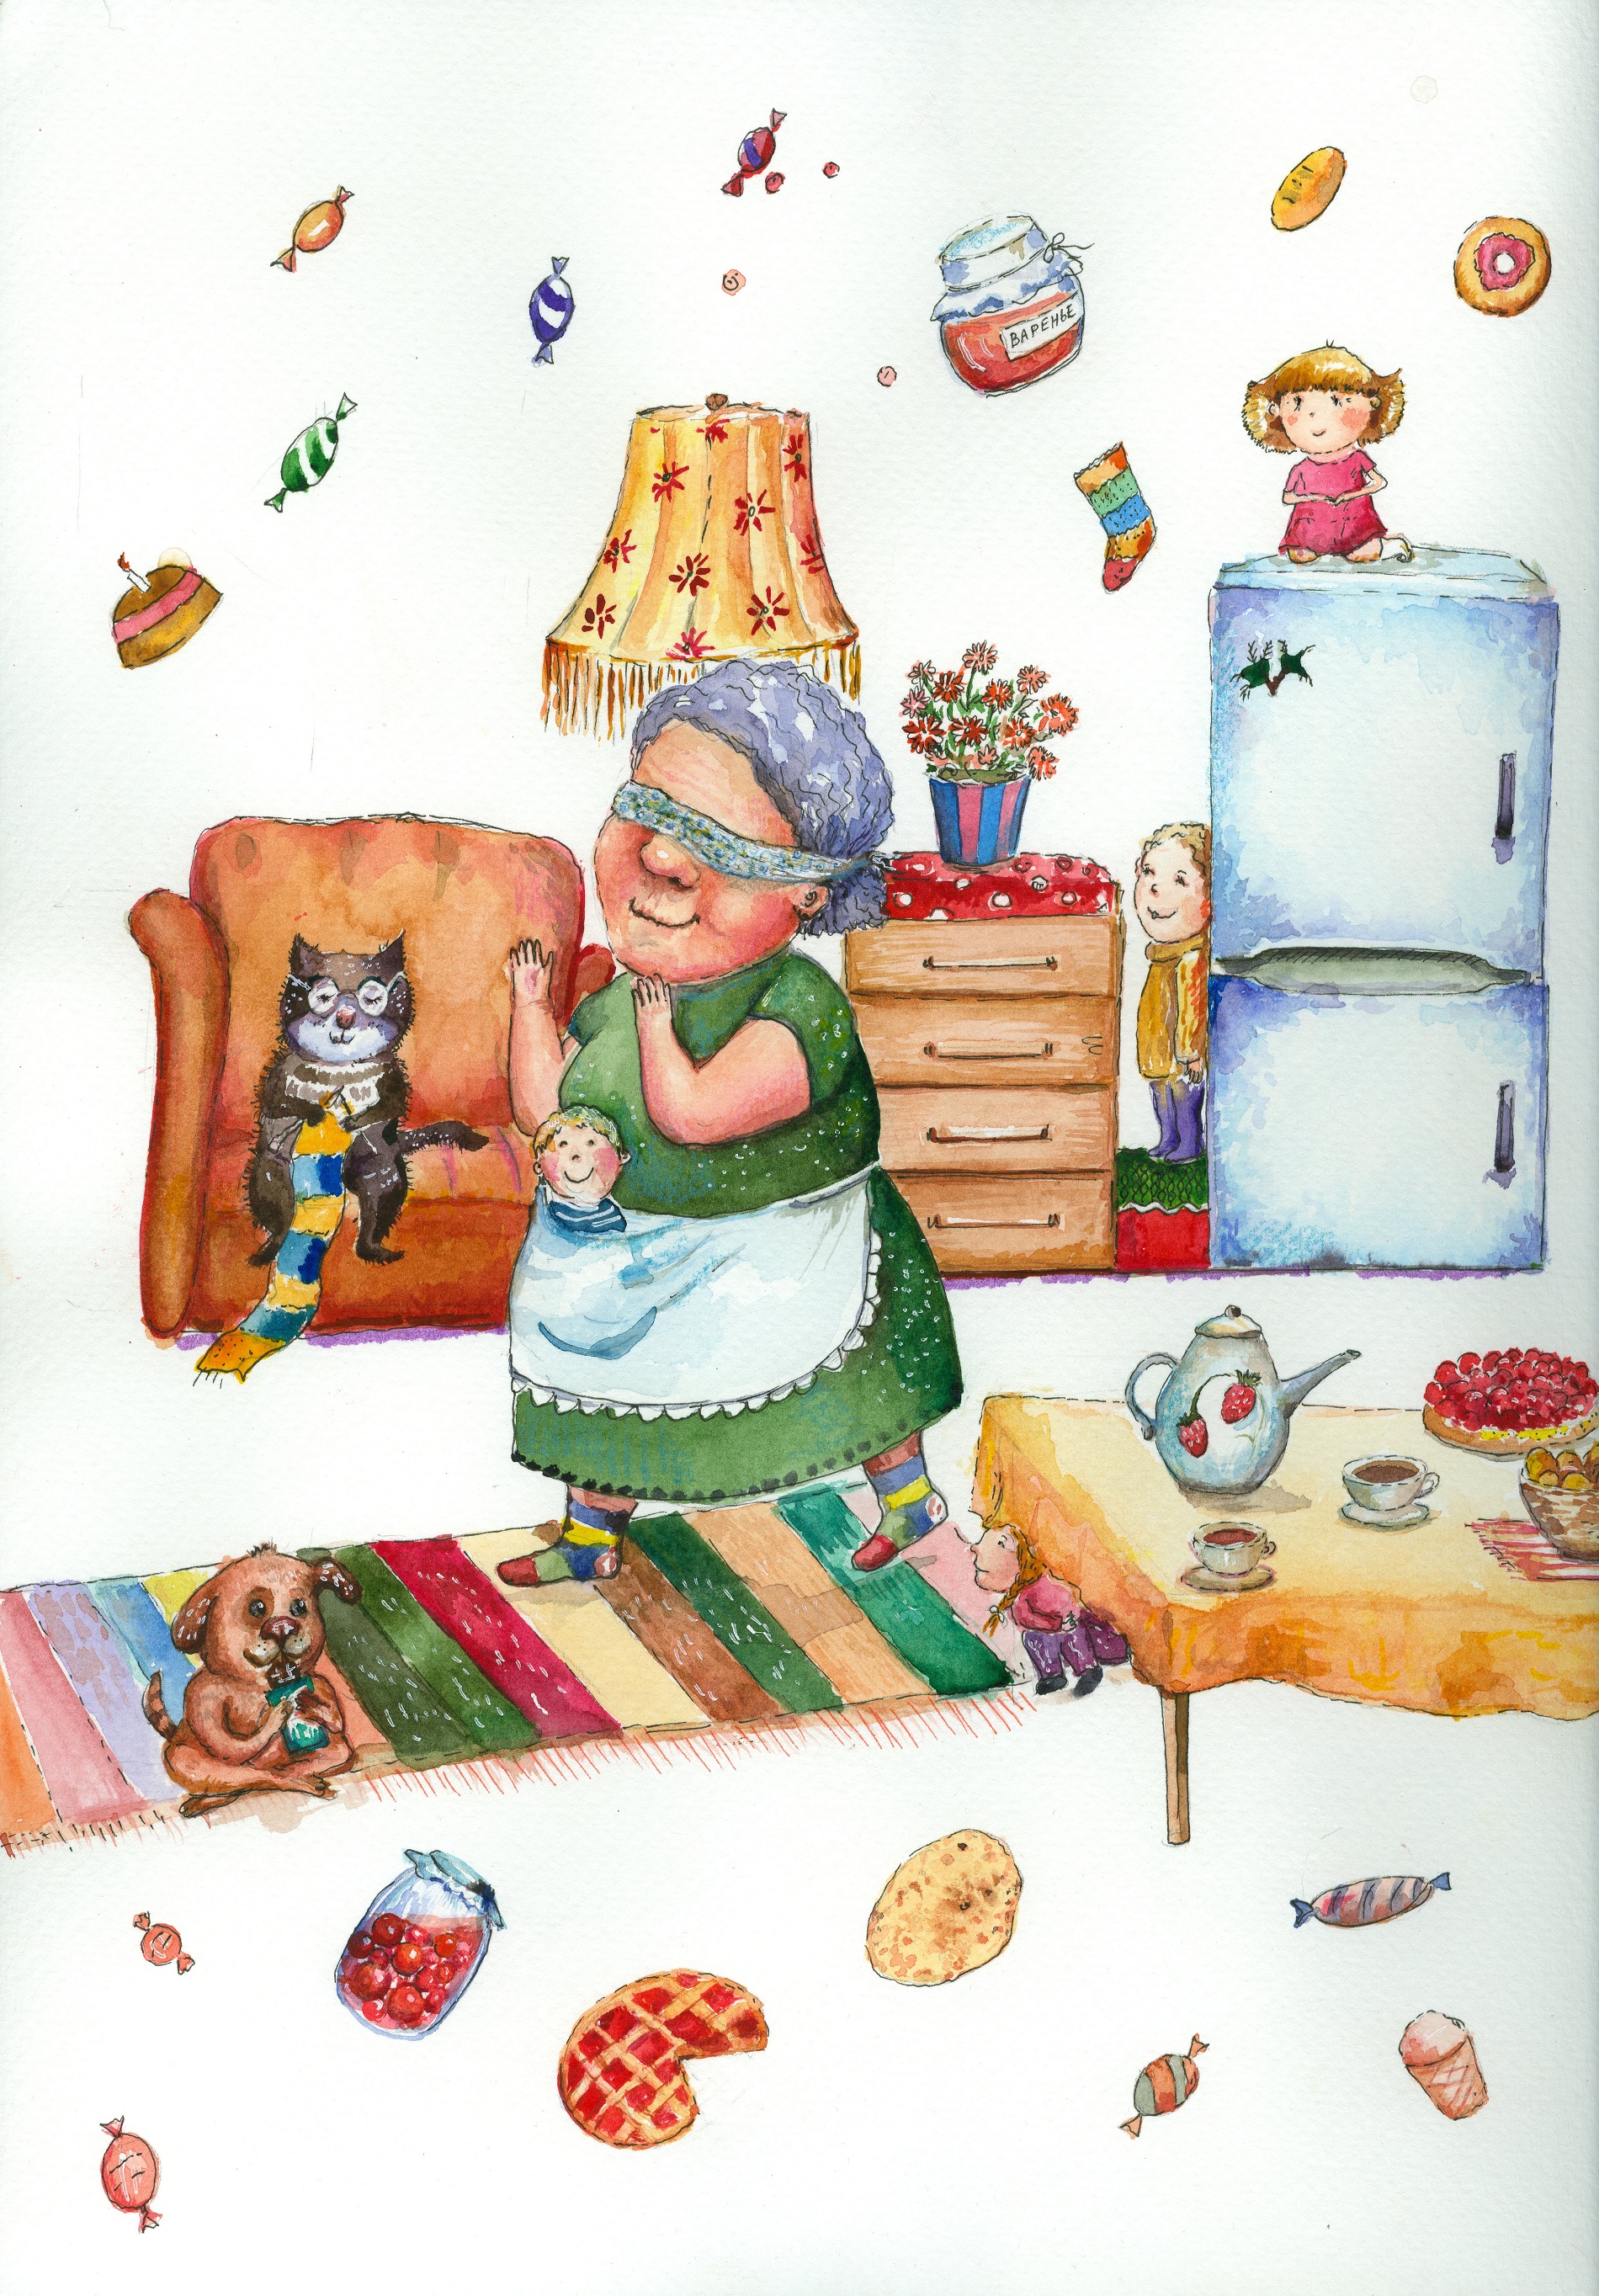 Иллюстрация к главе «Ох уж эти бабушки!»